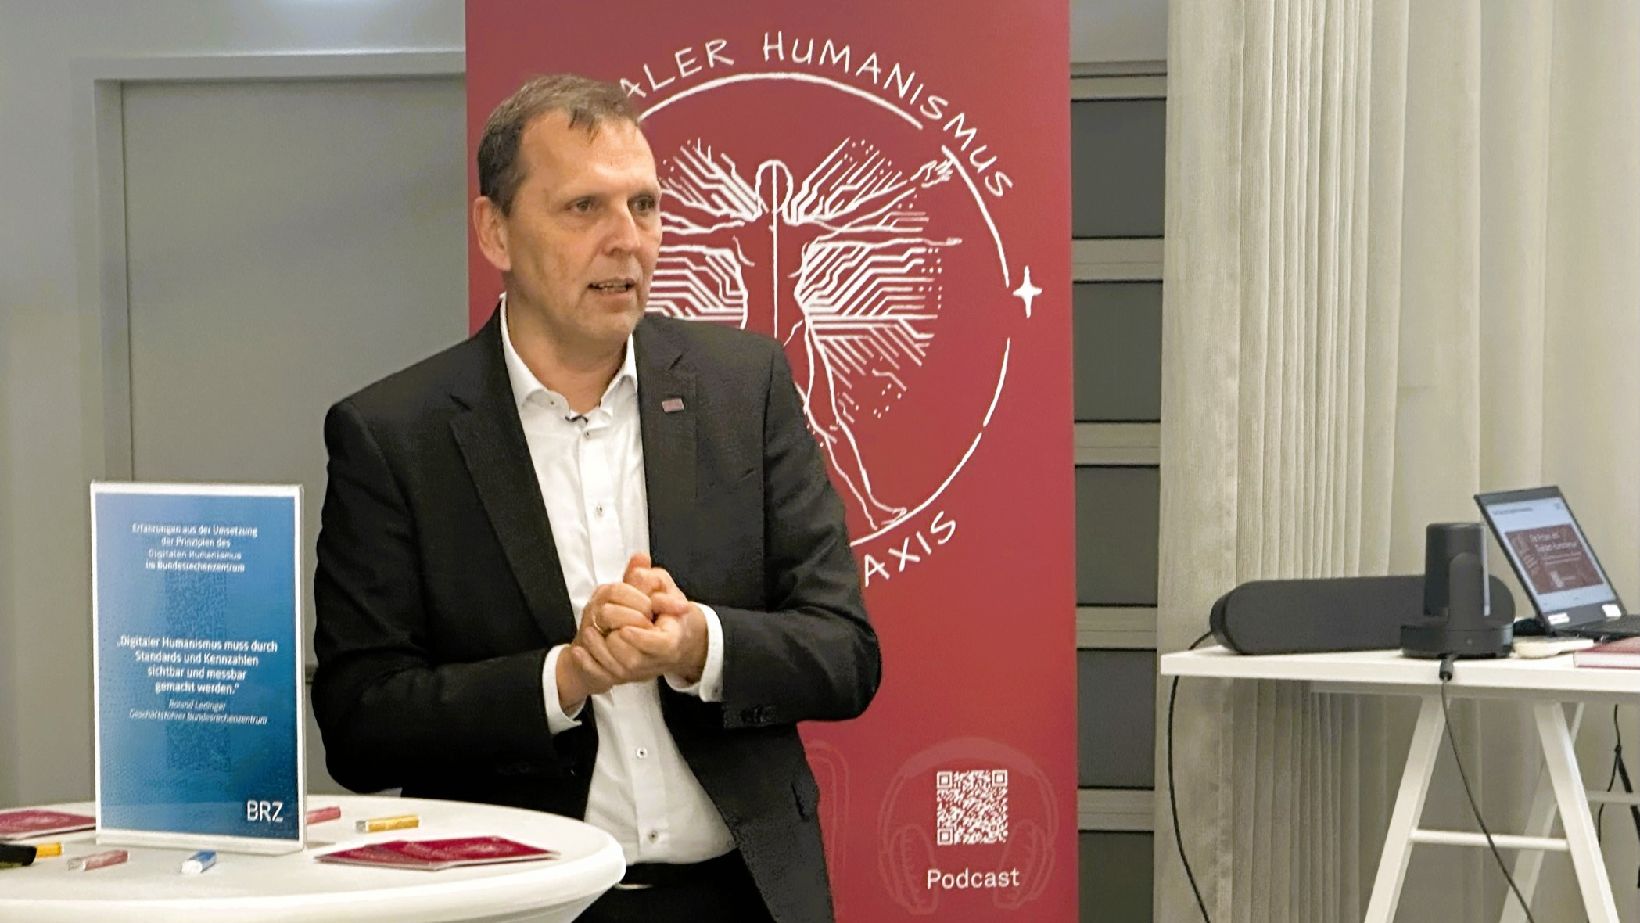 Roland Ledinger spricht beim Event Digitaler Humanismus